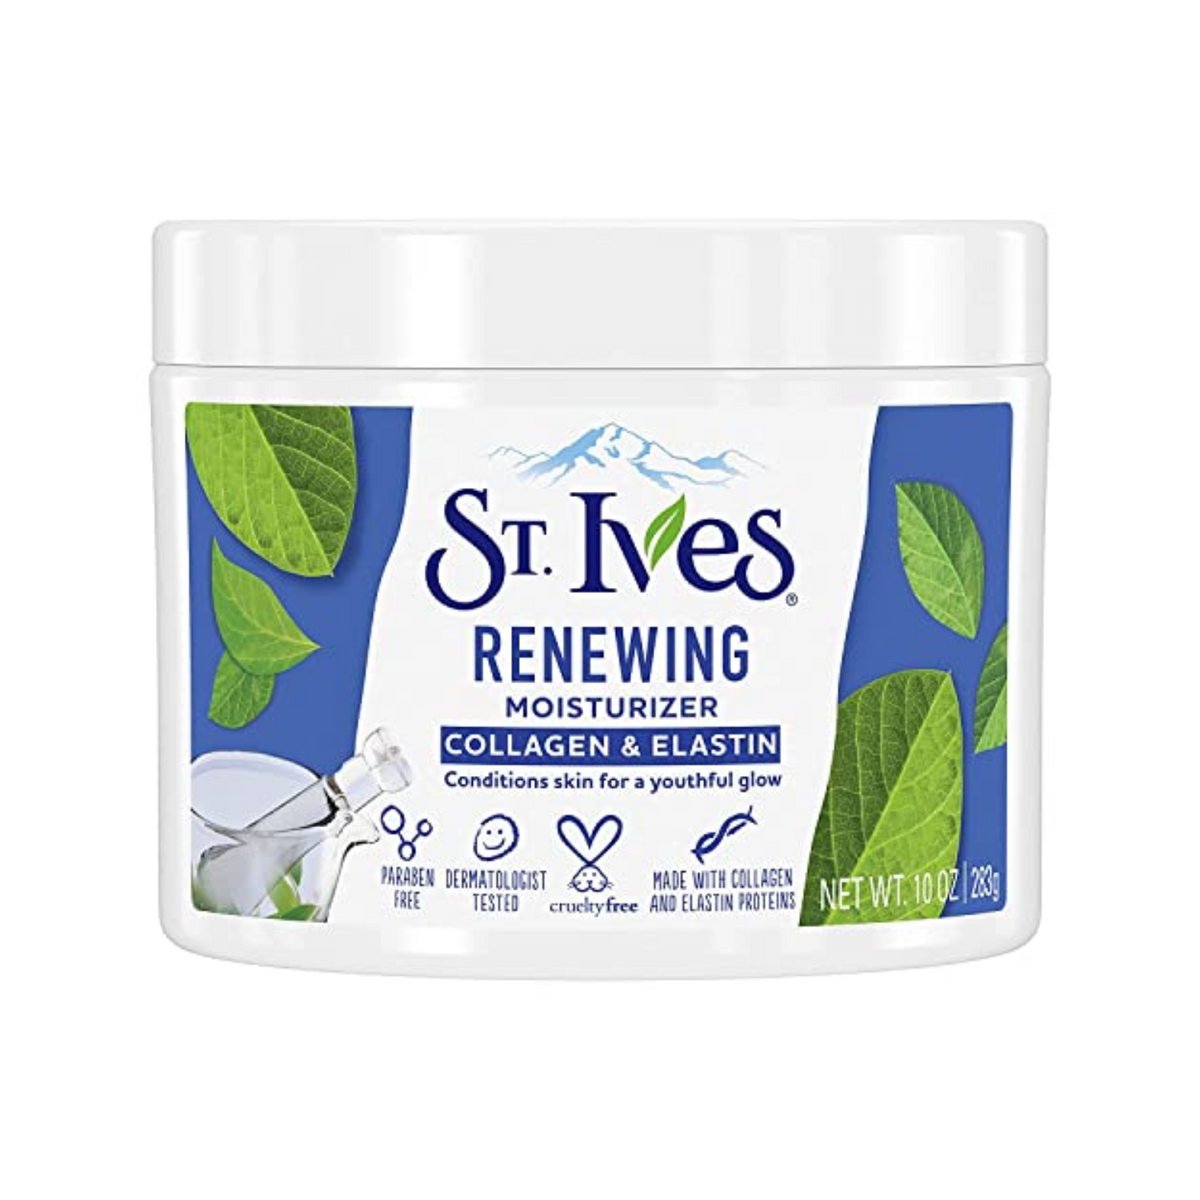 st-ives-renewing-moisturizer-collagen-elastin-283g